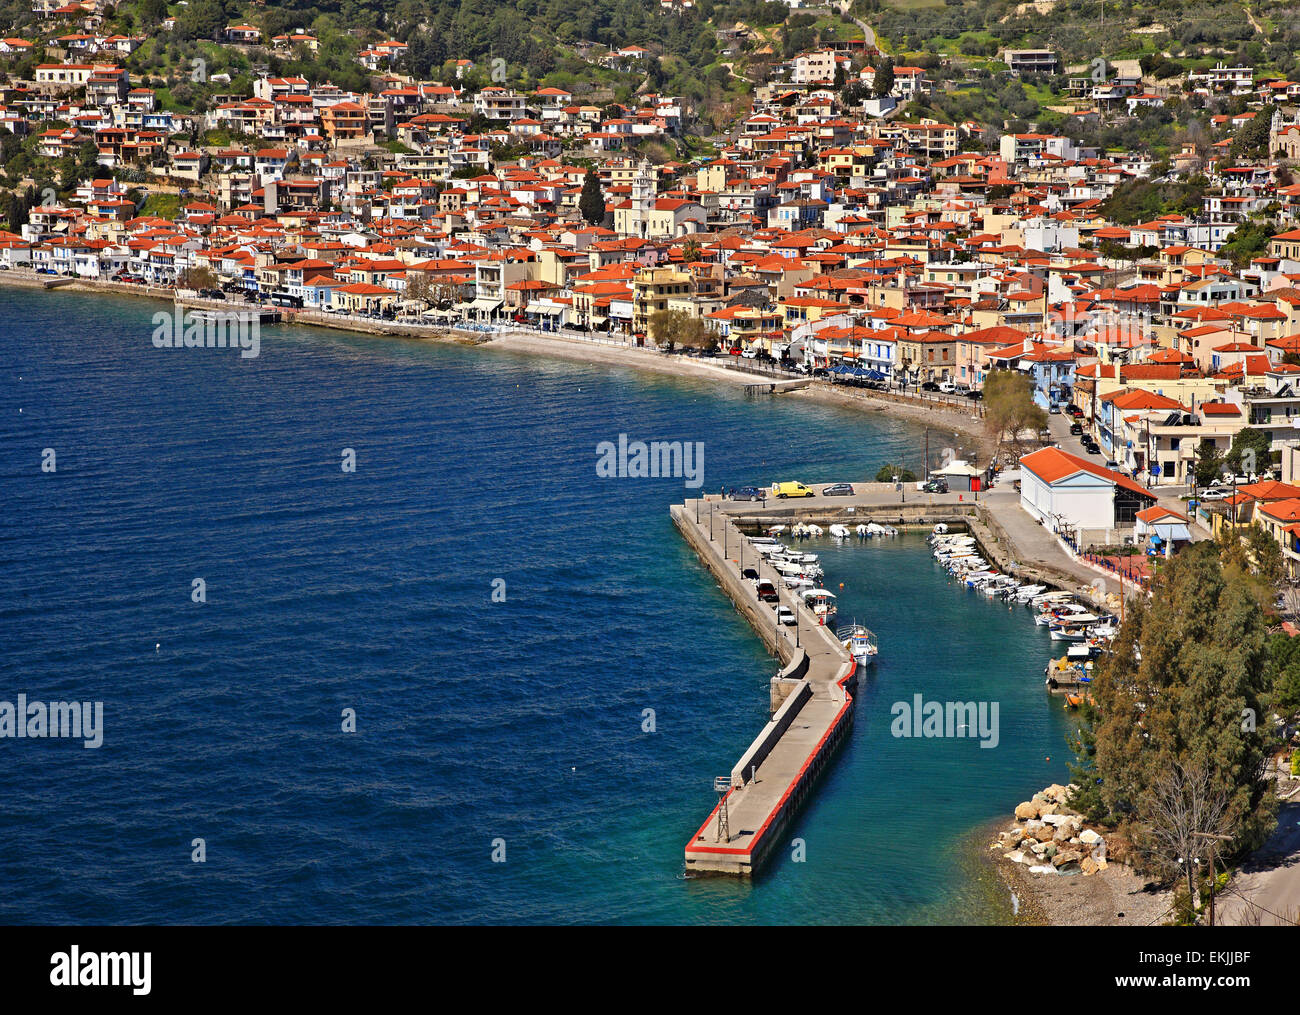 Limni, einer der schönsten Städte der Insel Evia (Euböa) (Griechenland) Stockfoto